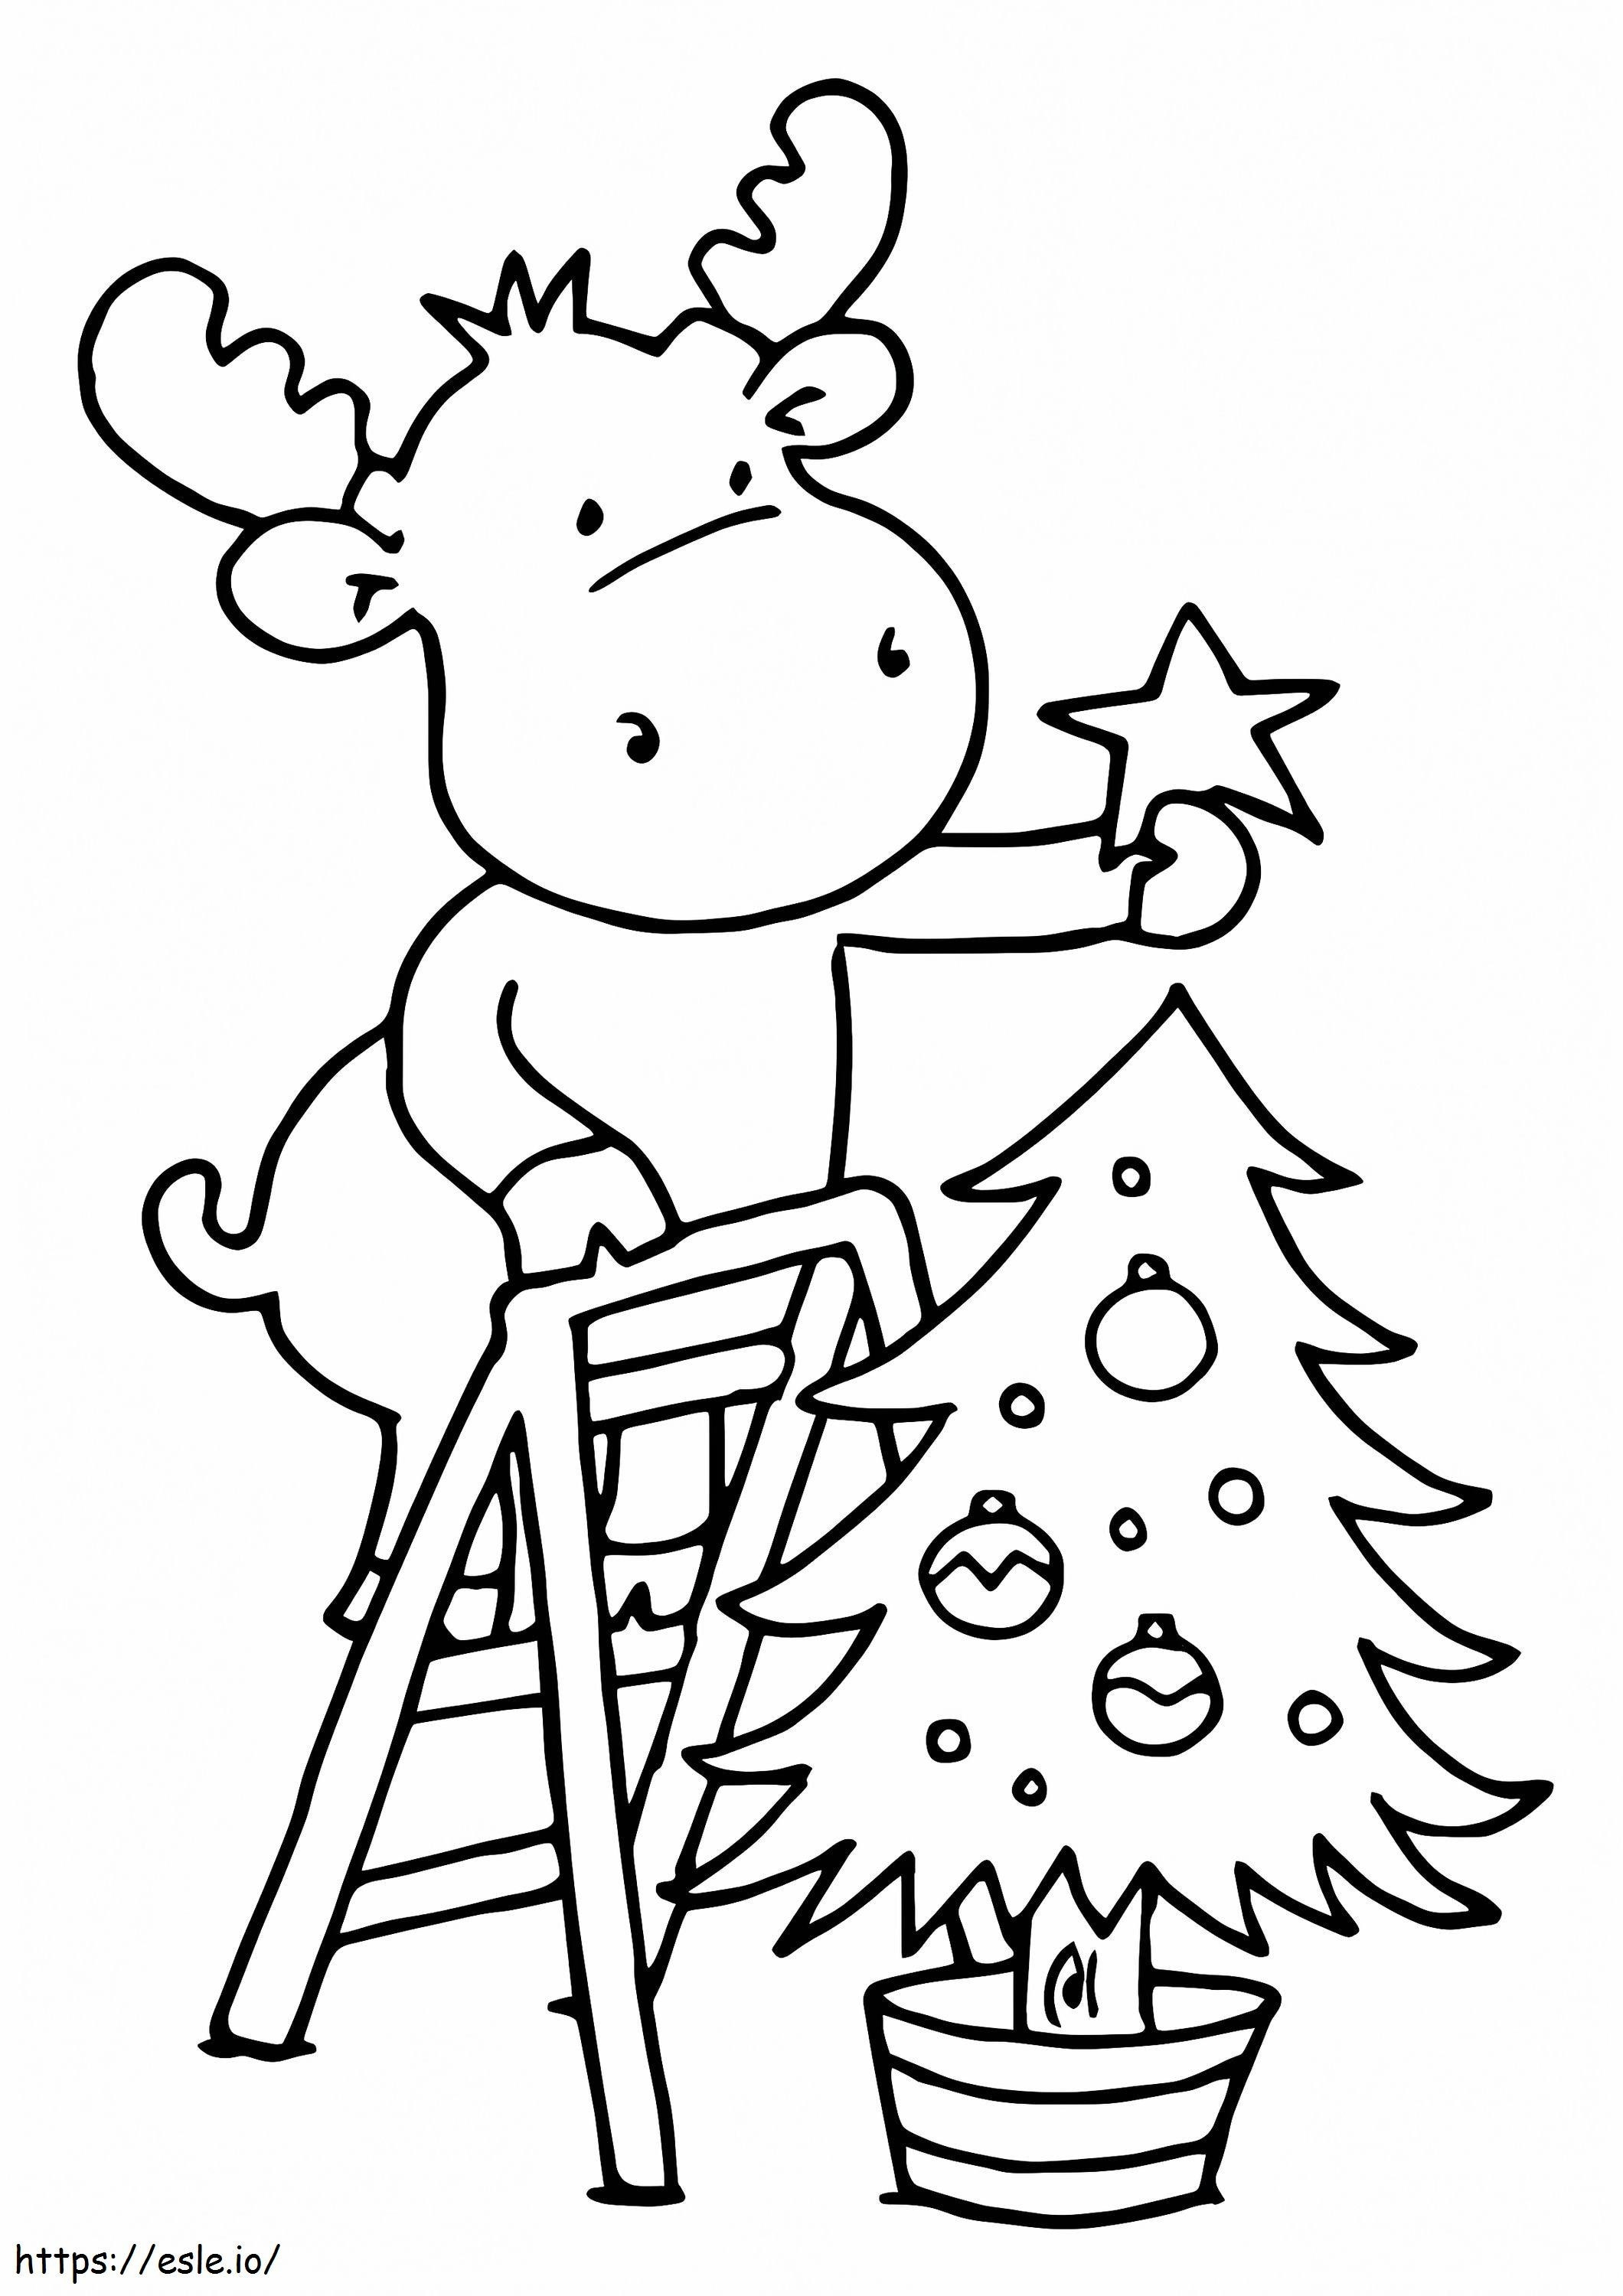 Renna Appendere Una Stella Sull'albero Di Natale da colorare